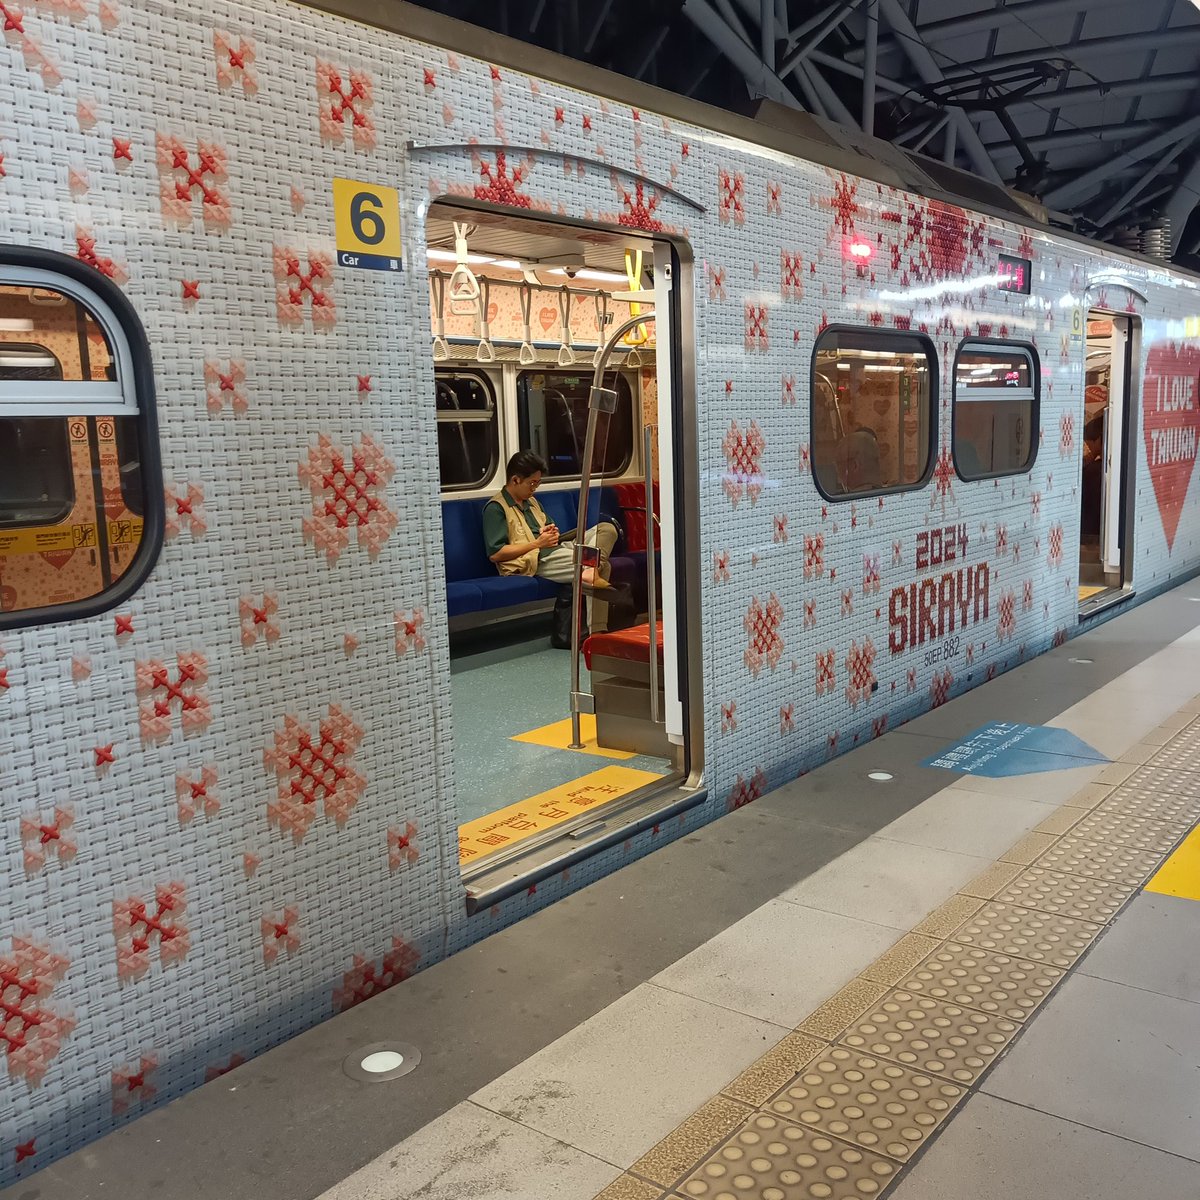 昨日乗ったローカル線の電車❤台湾のデザインて可愛いよね。

#台湾
#travelgram